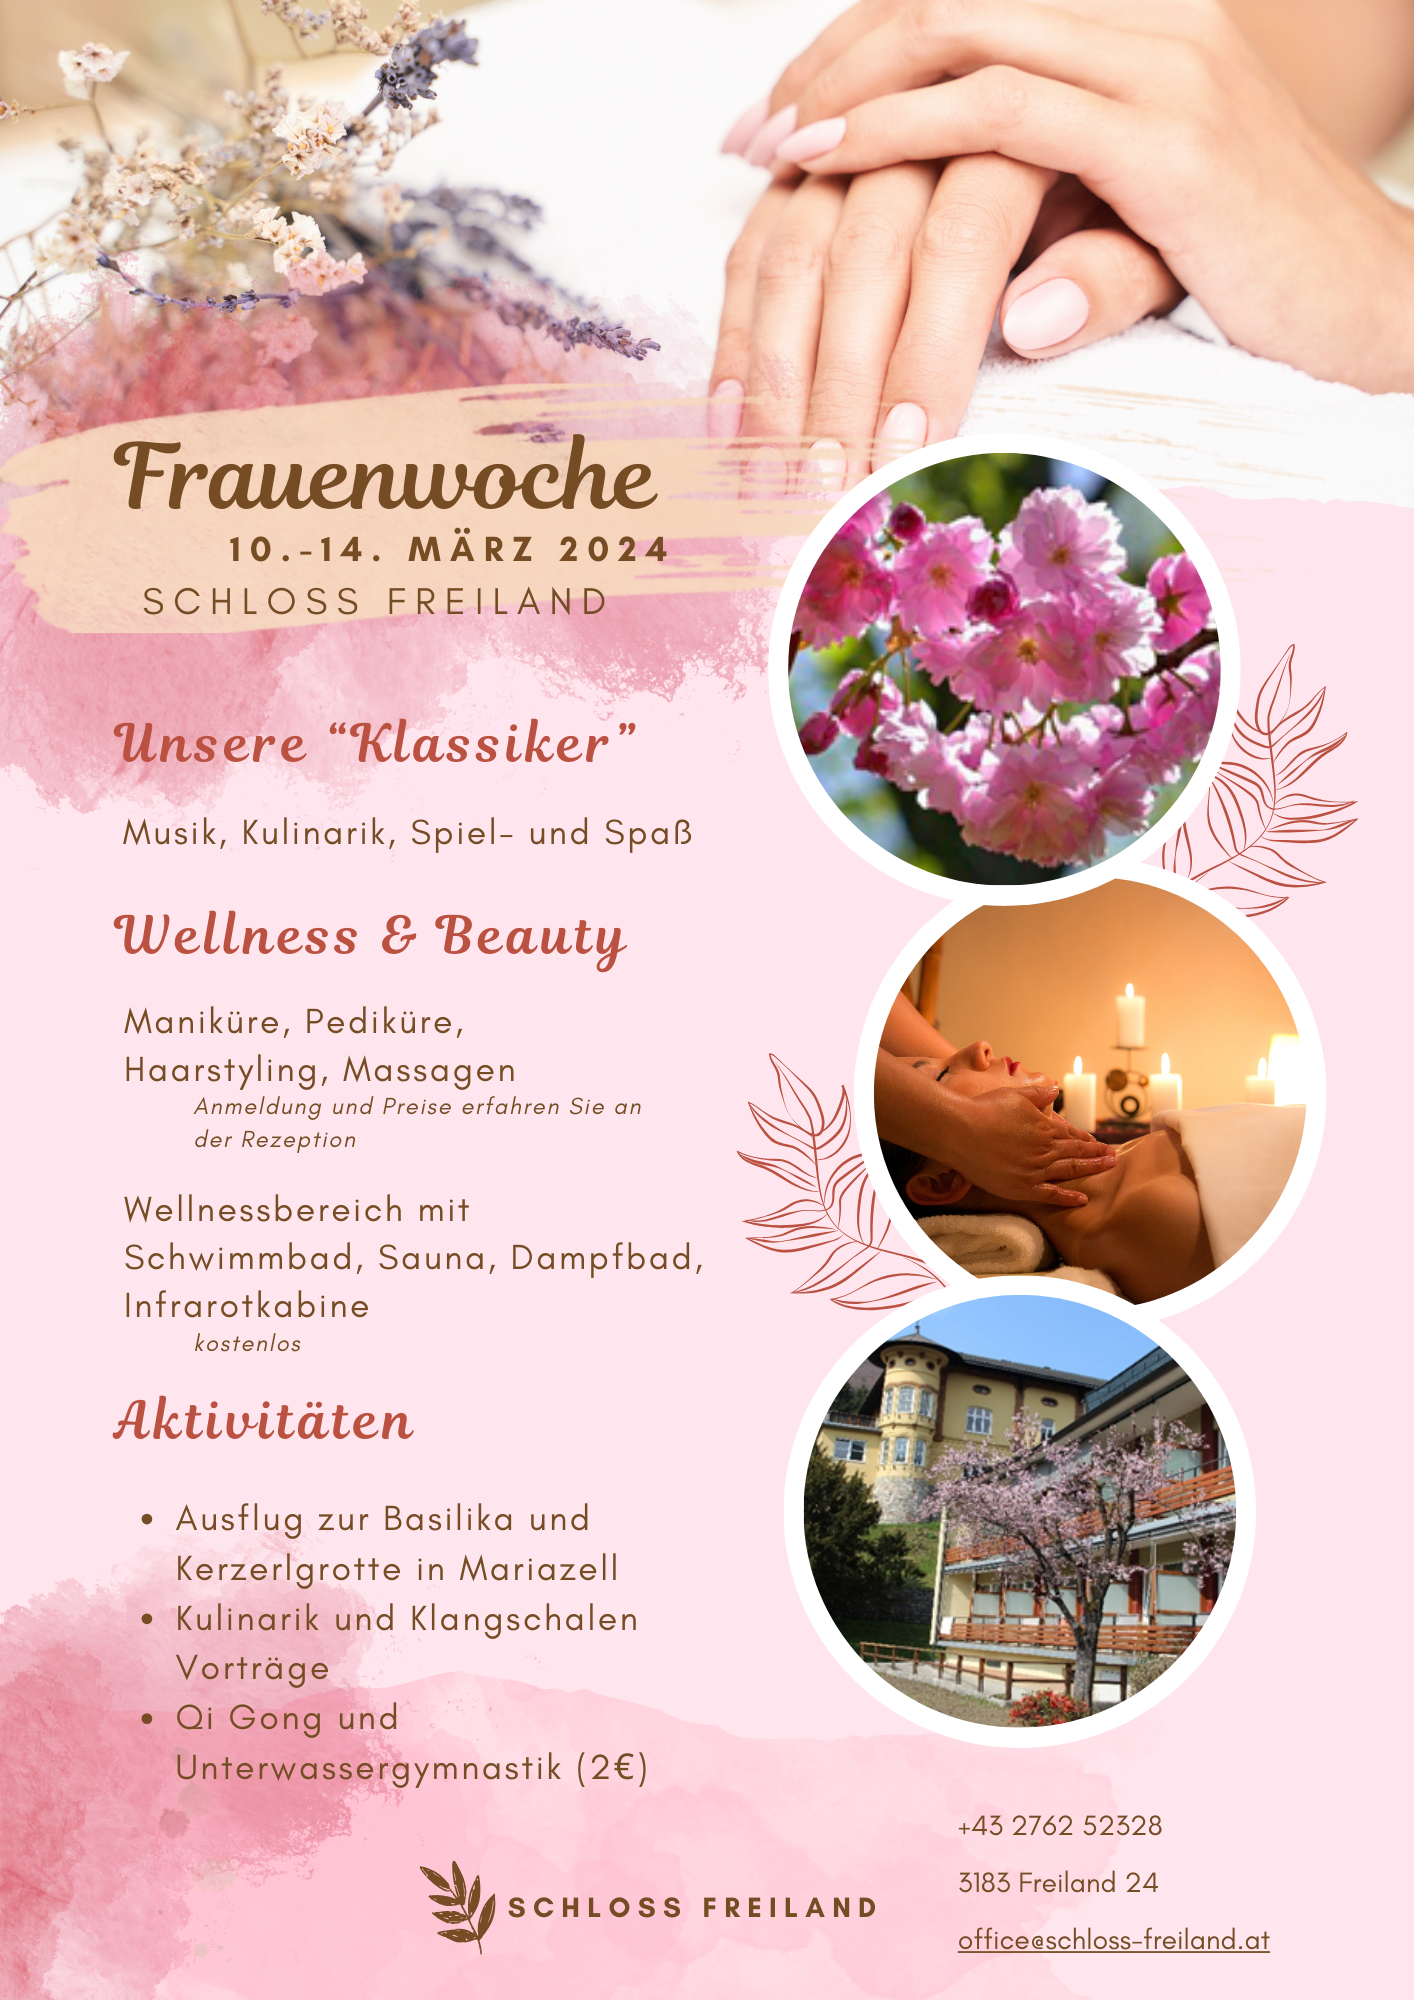 FrauenWoche-Freiland_Flyer-Frauenwoche